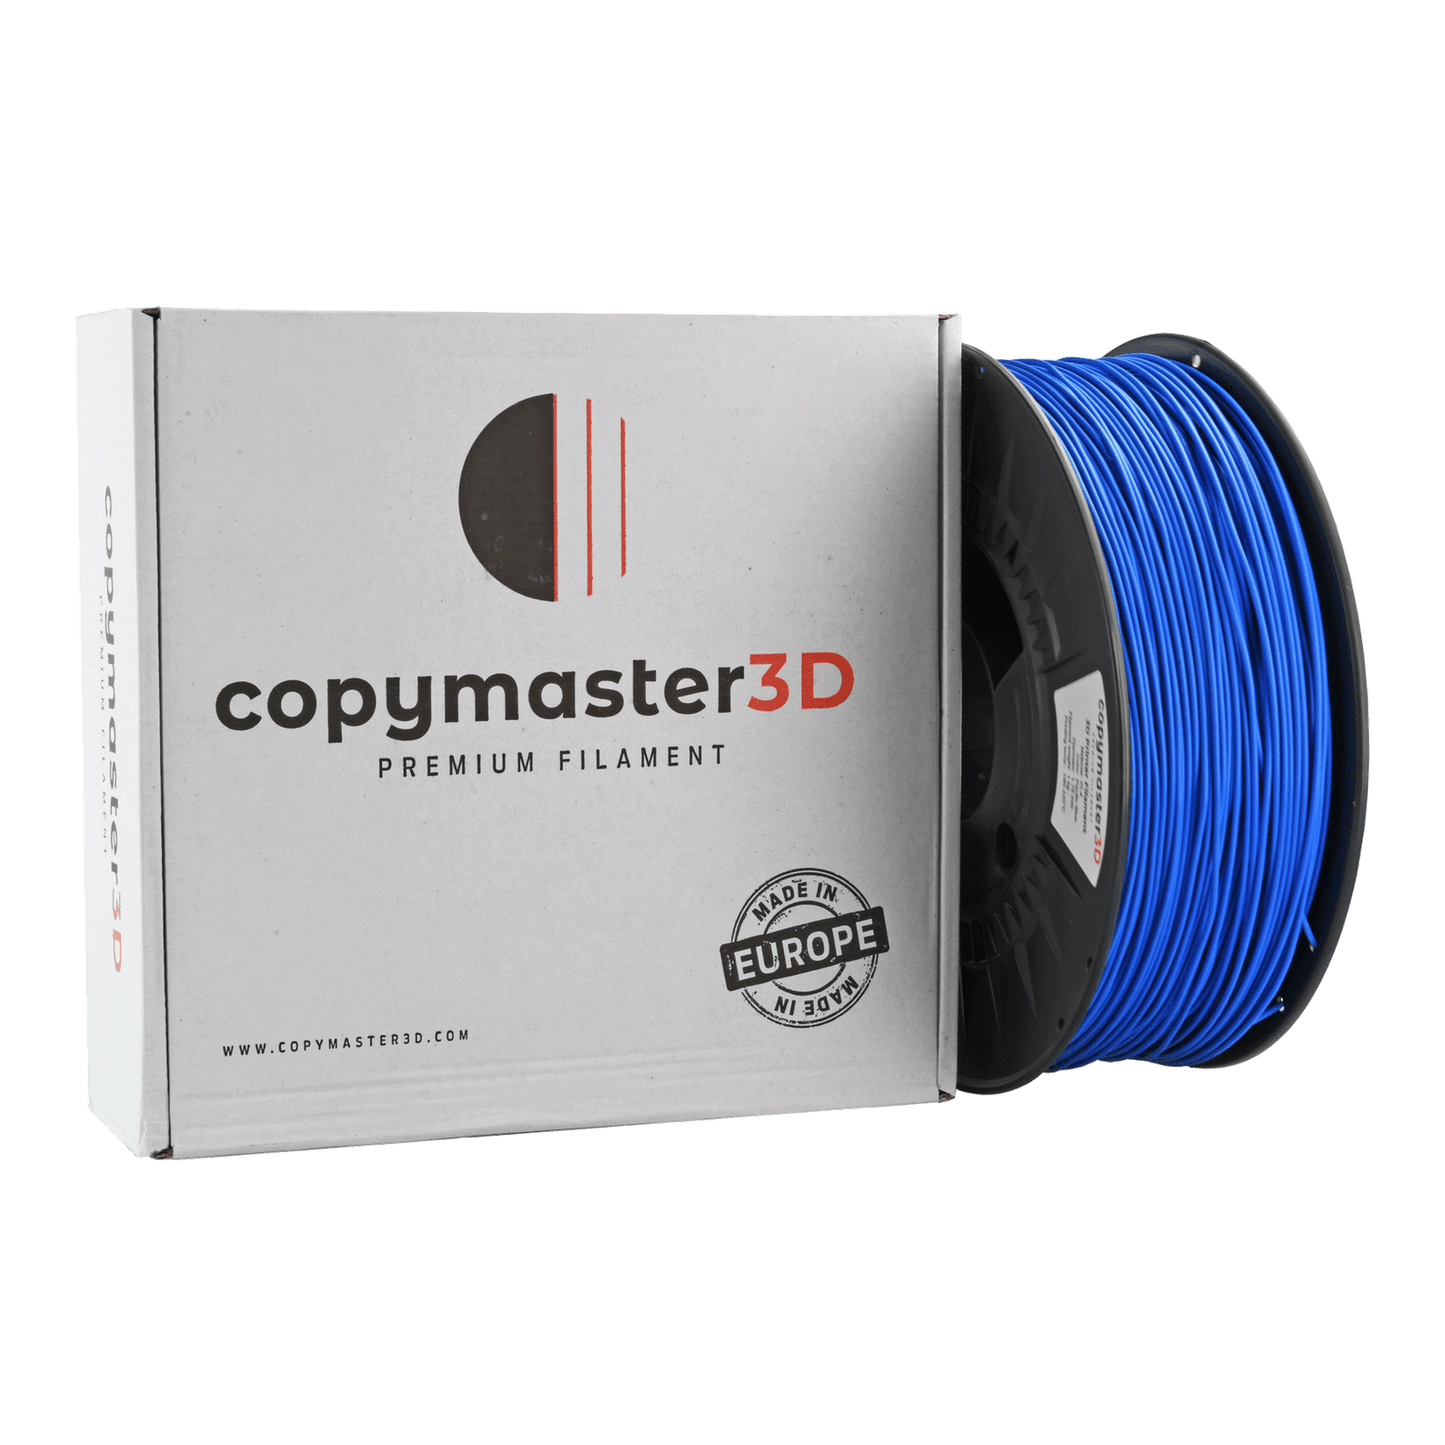 Copymaster3D Premium PLA Filament 1.75mm 1KG Pacific Blue